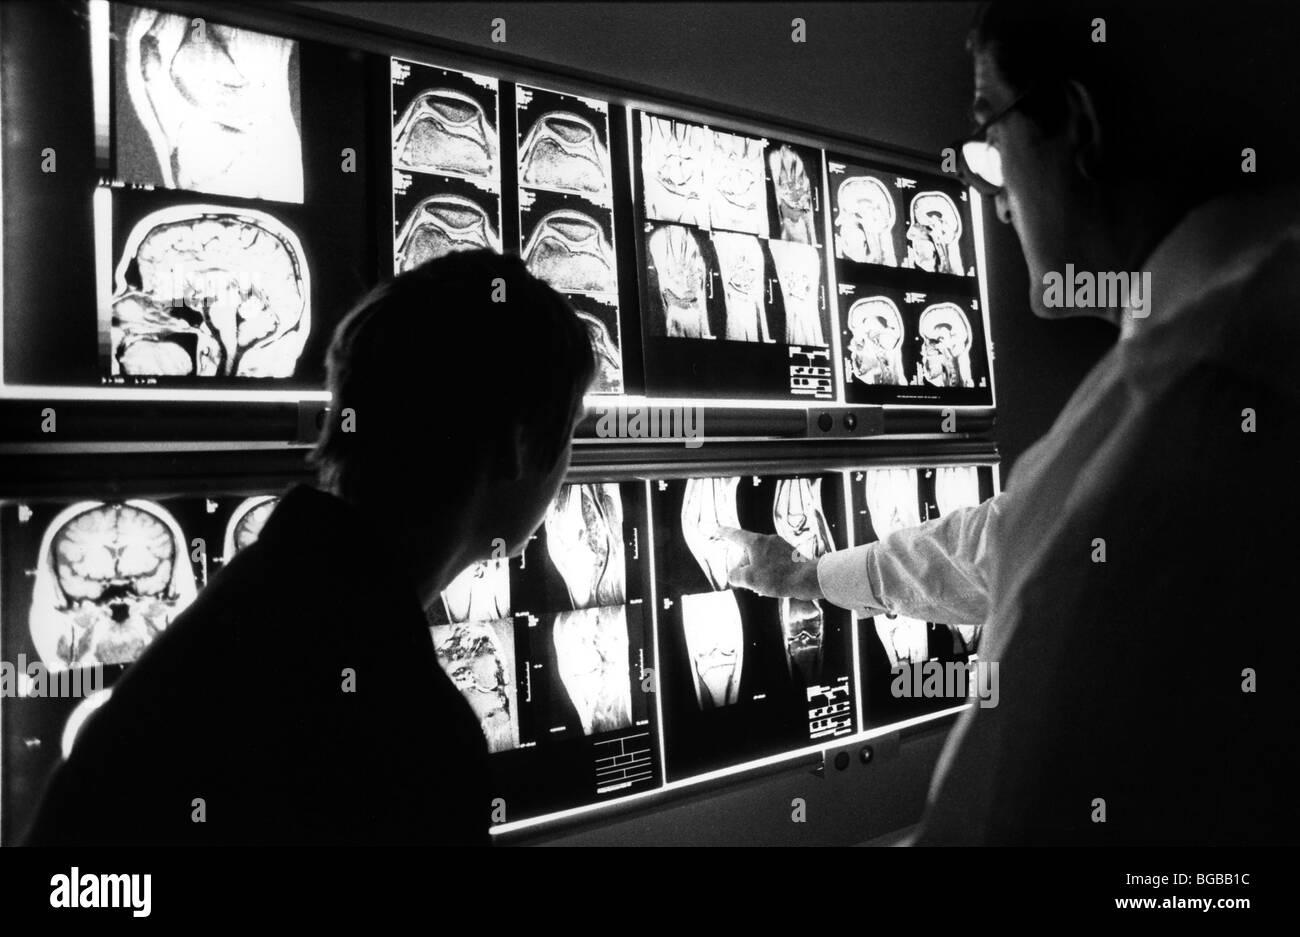 Royalty free fotografia di MRI scan monitor nhs specialista del settore sanitario privato Foto Stock